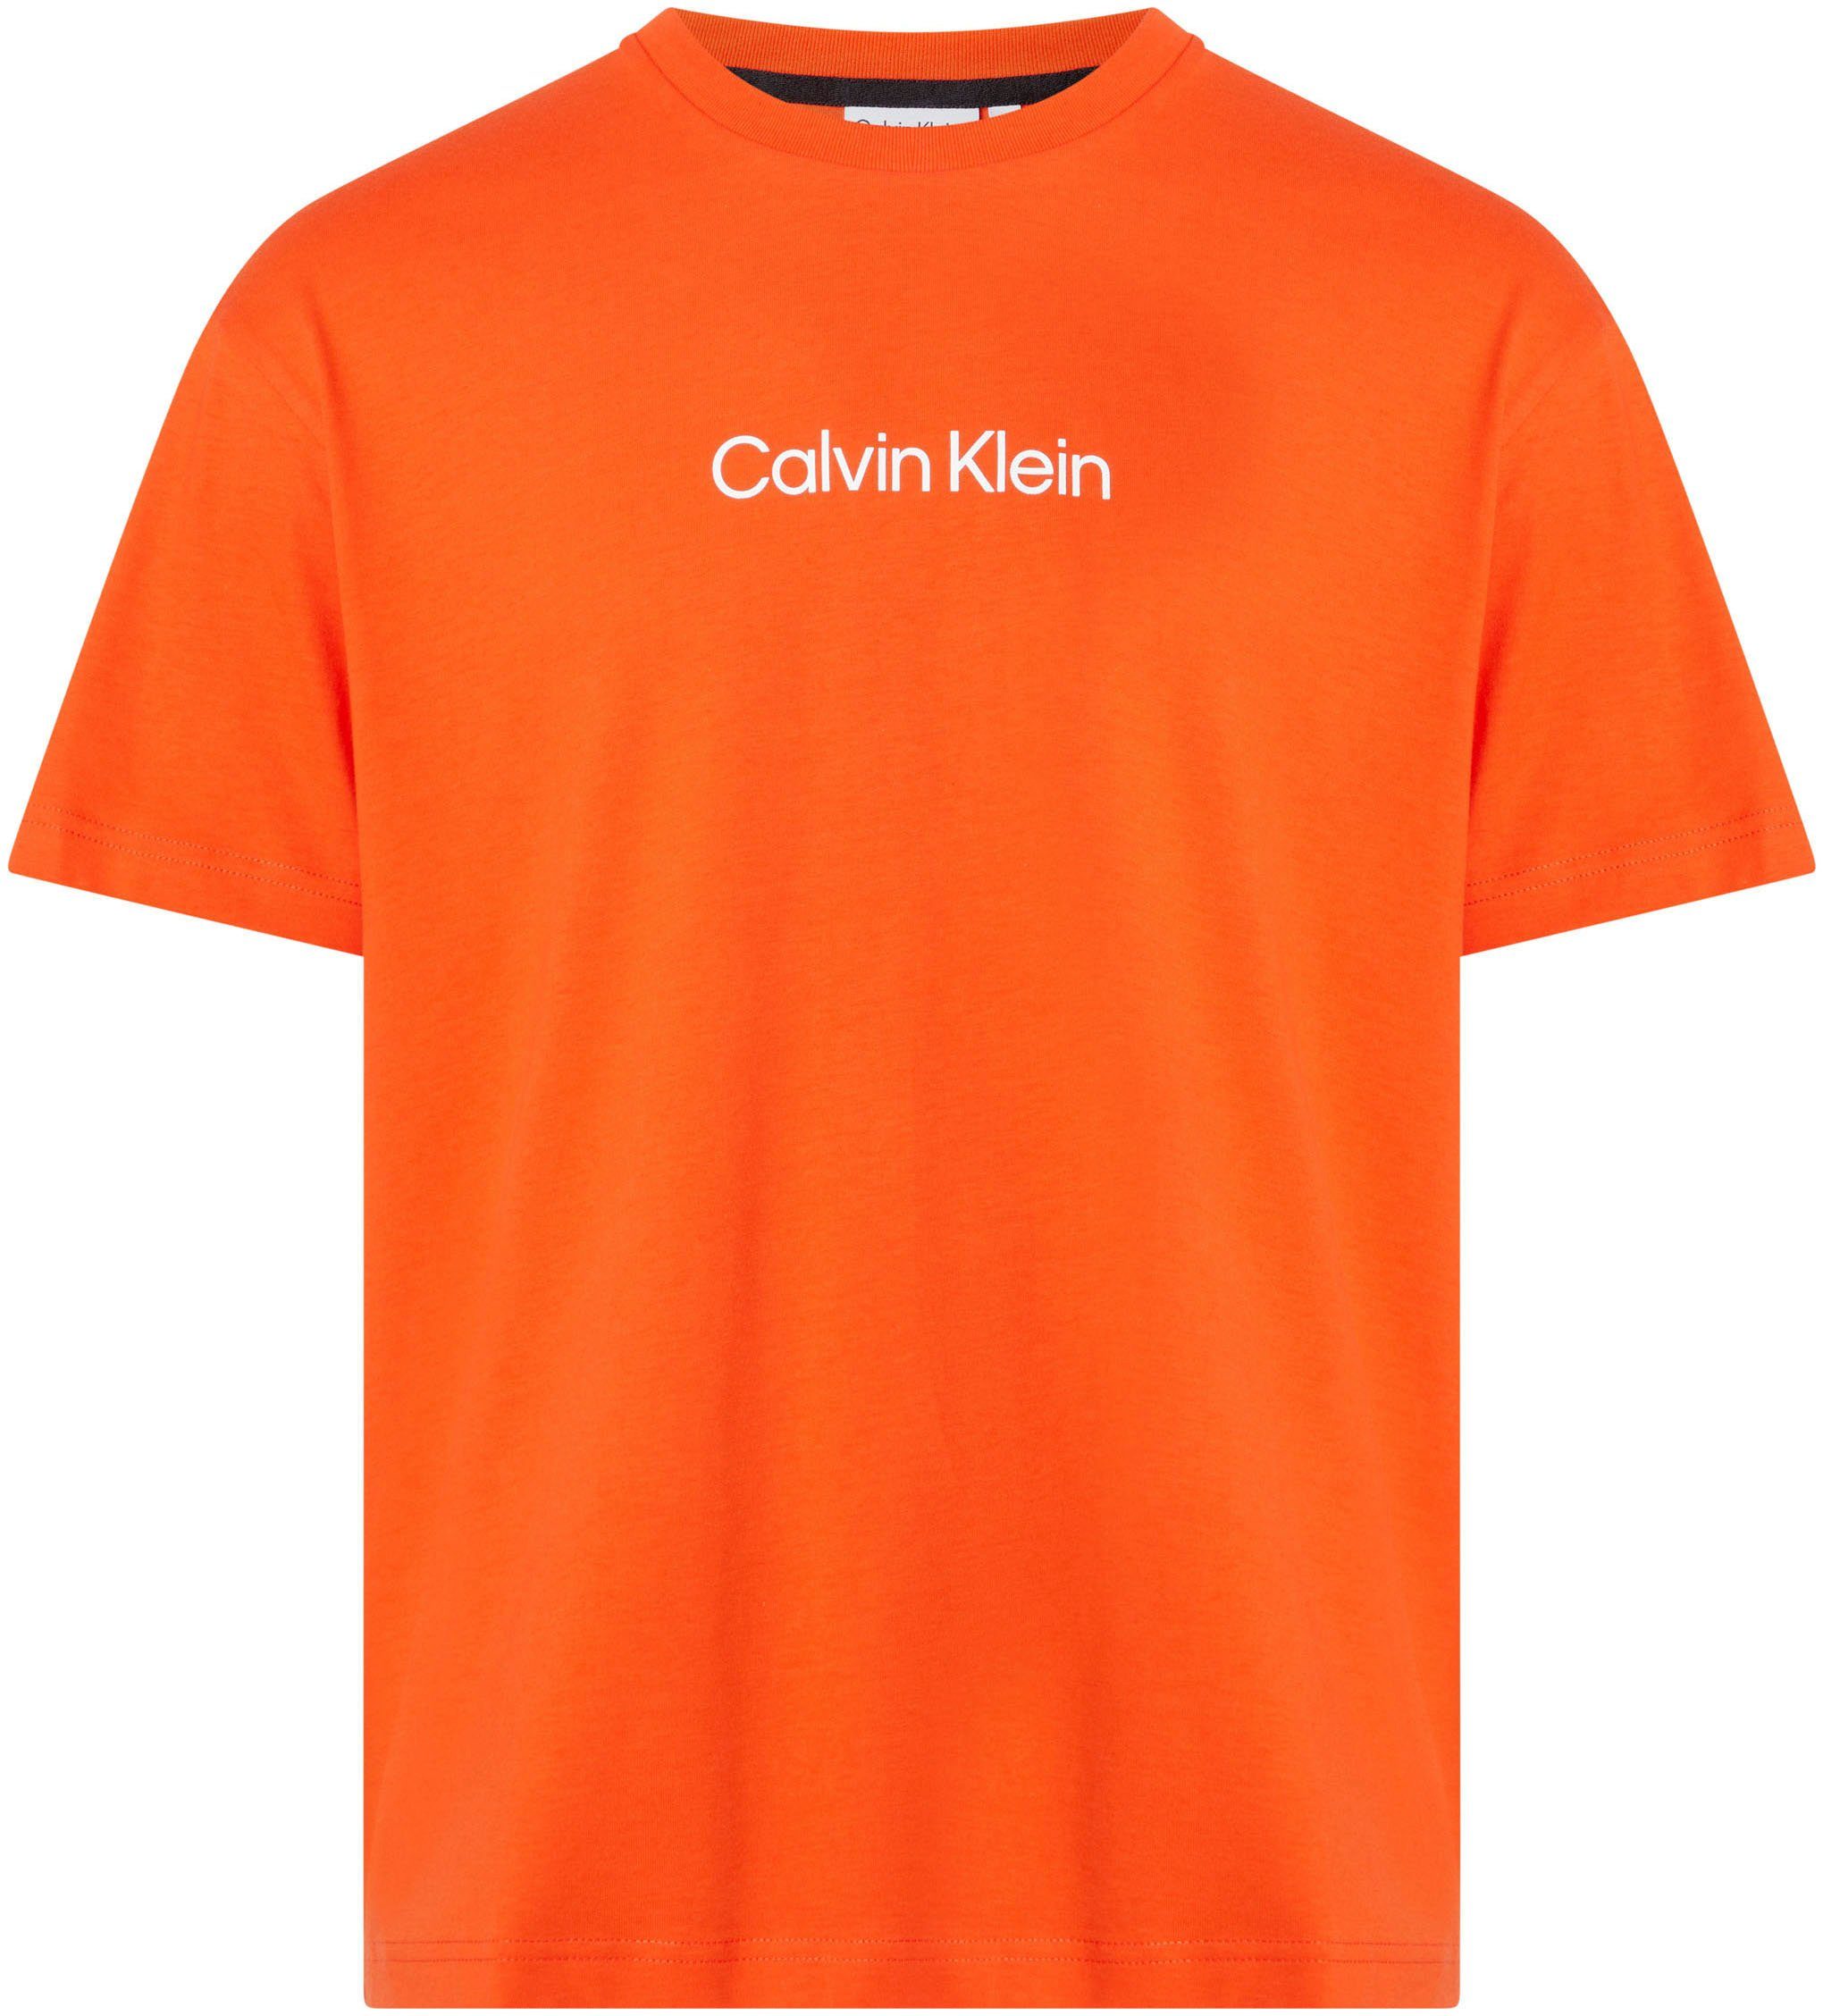 Calvin Klein Markenlabel T-Shirt HERO mit Orange aufgedrucktem LOGO Spicy T-SHIRT COMFORT